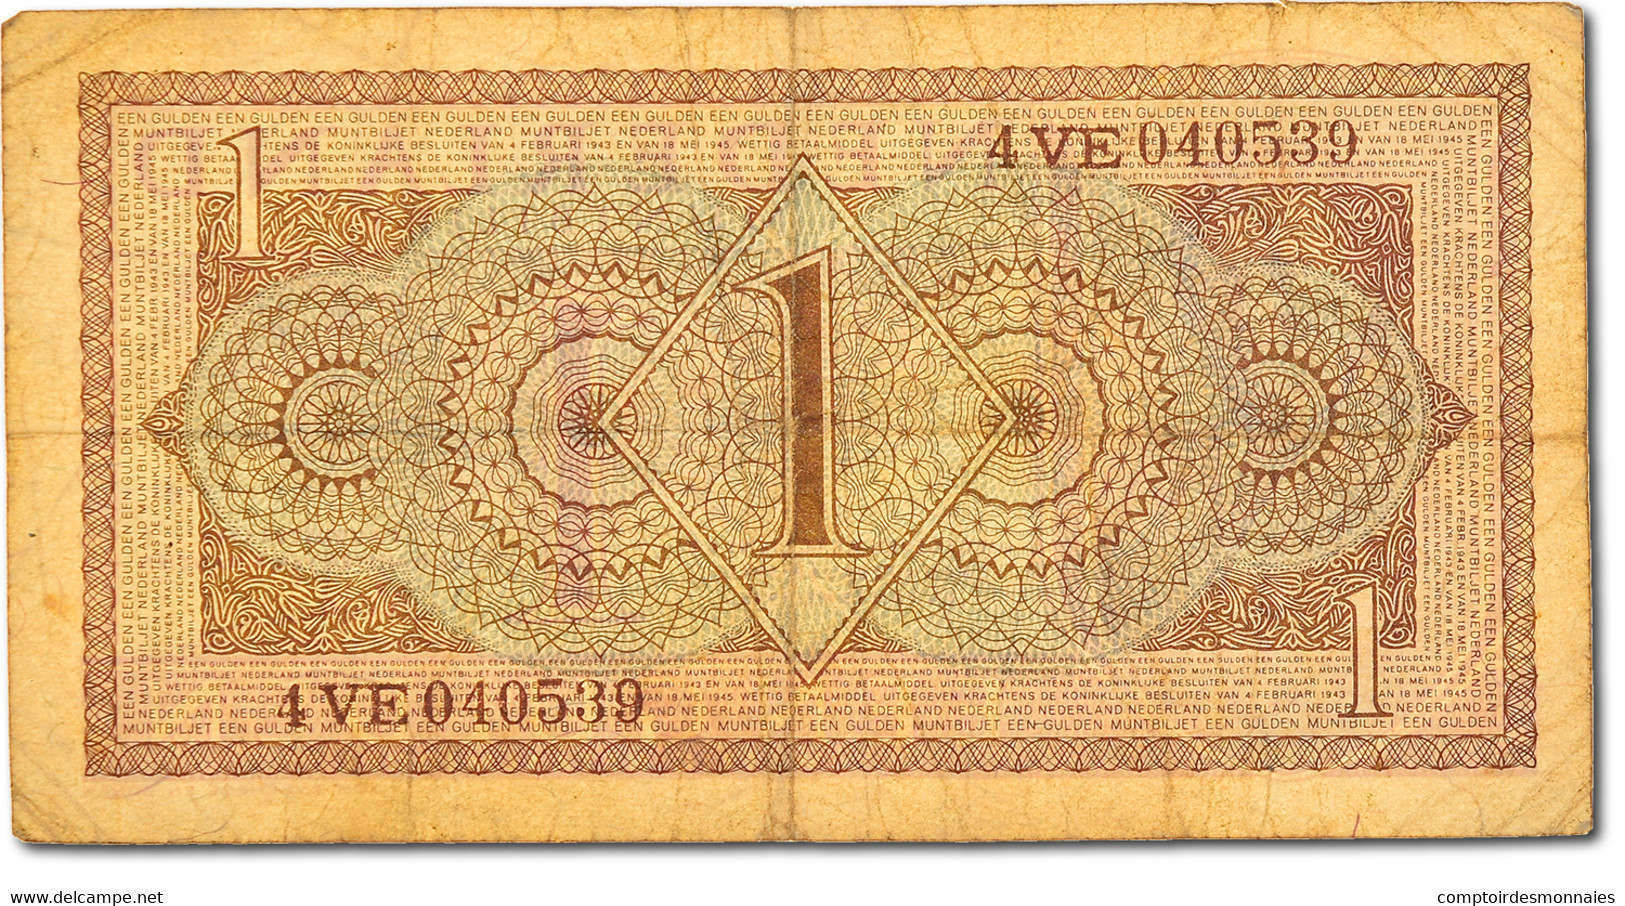 Billet, Pays-Bas, 1 Gulden, 1949, TTB - 1 Gulden